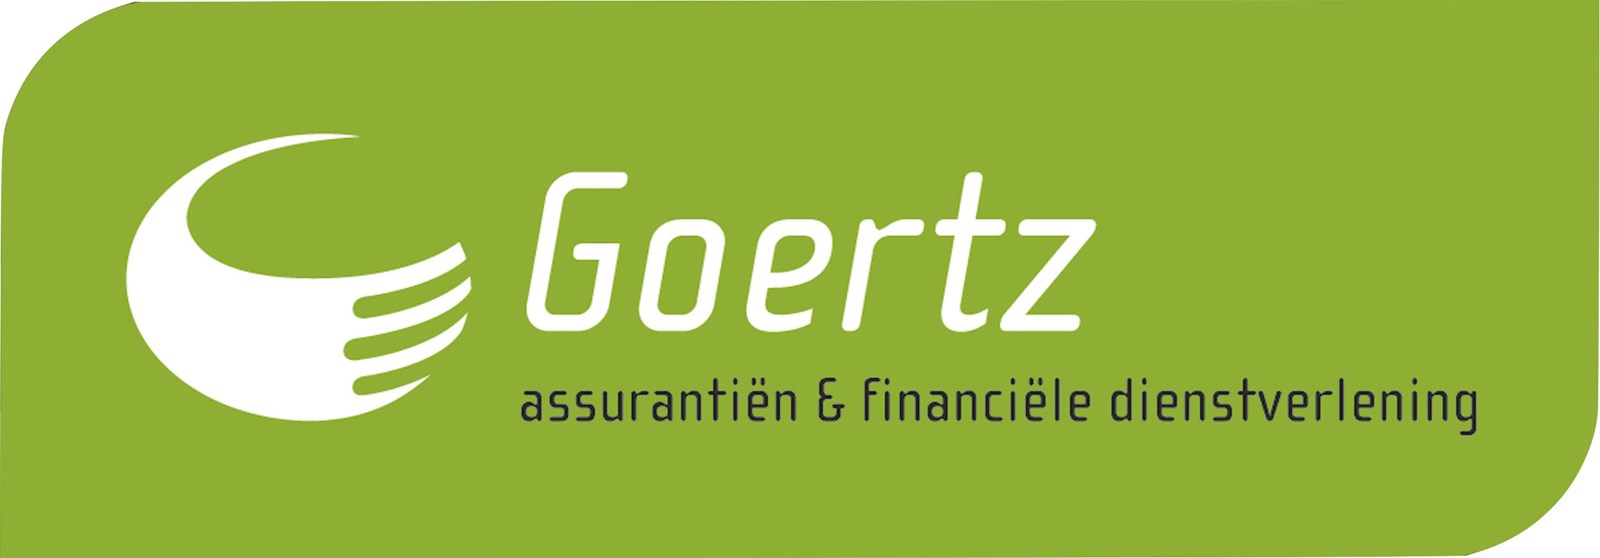 Logo van Goertz assurantiën & financiële dienstverlening